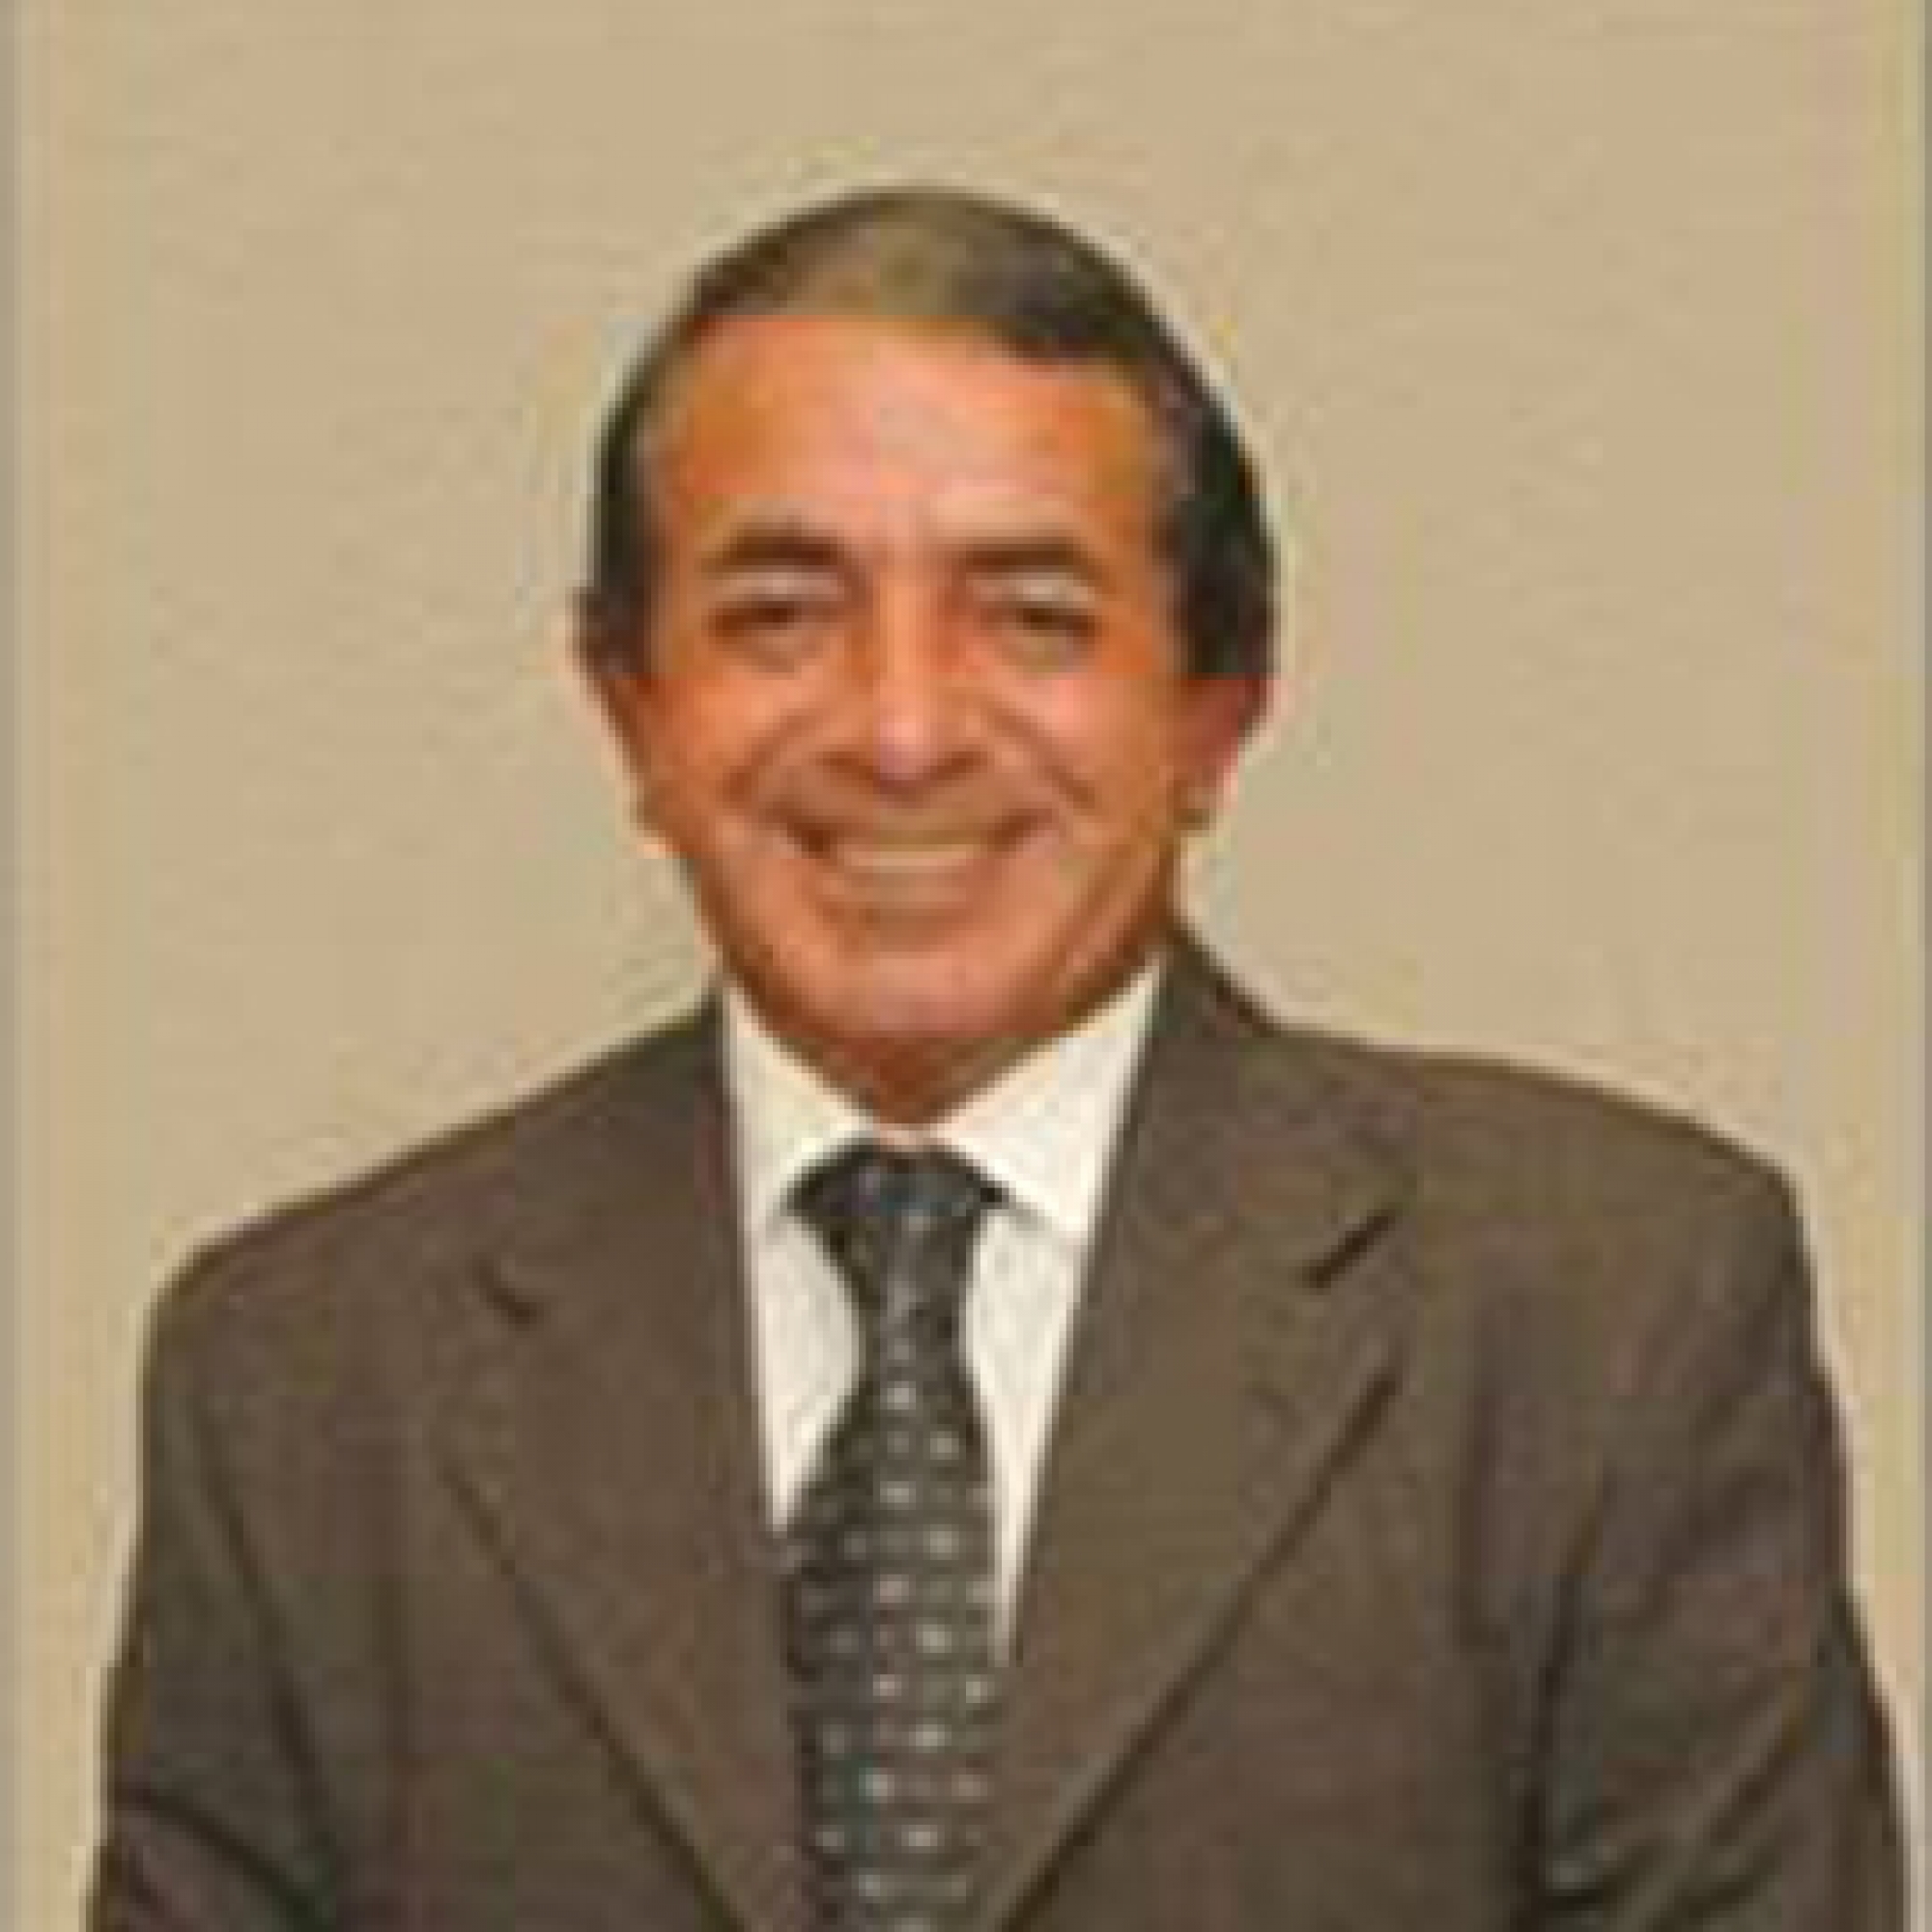 Omar Abel Benabentos